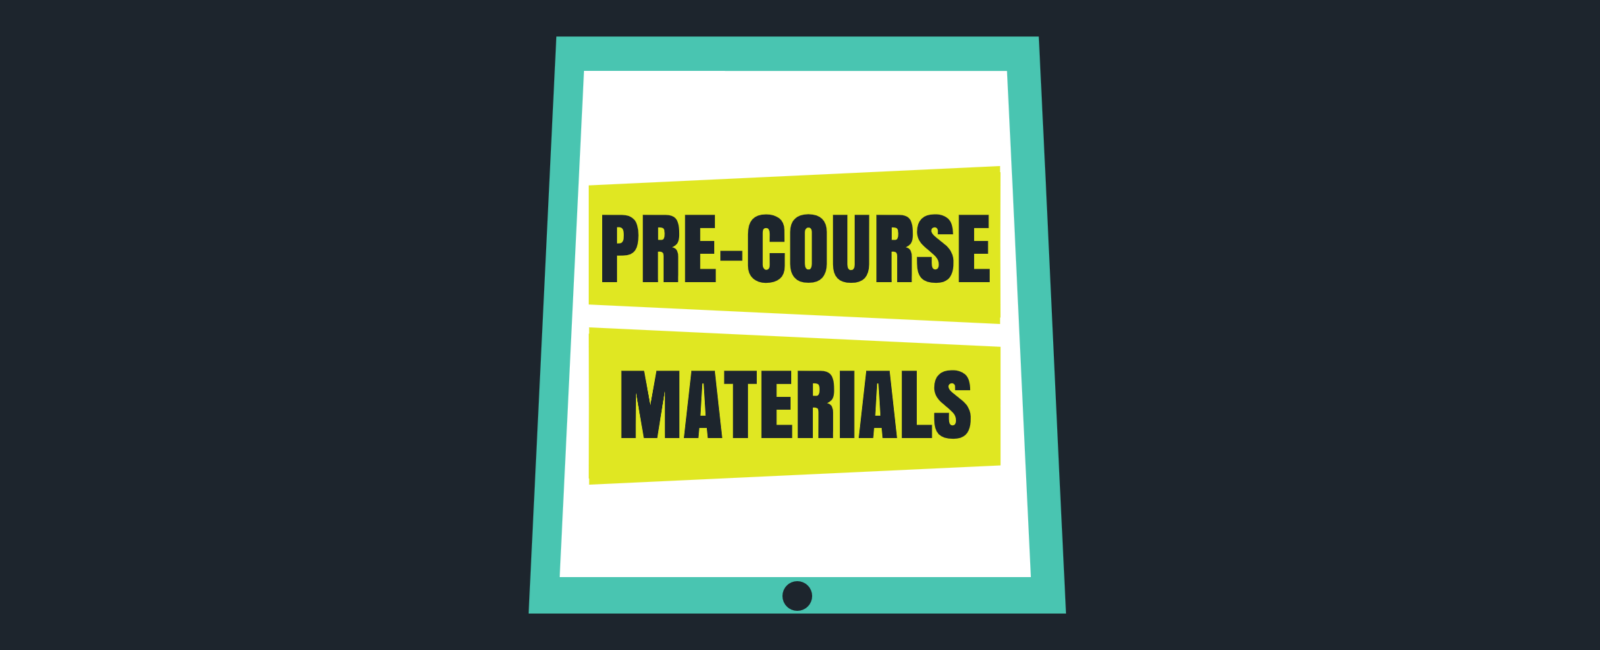 pre-course_materials_banner_logo_7